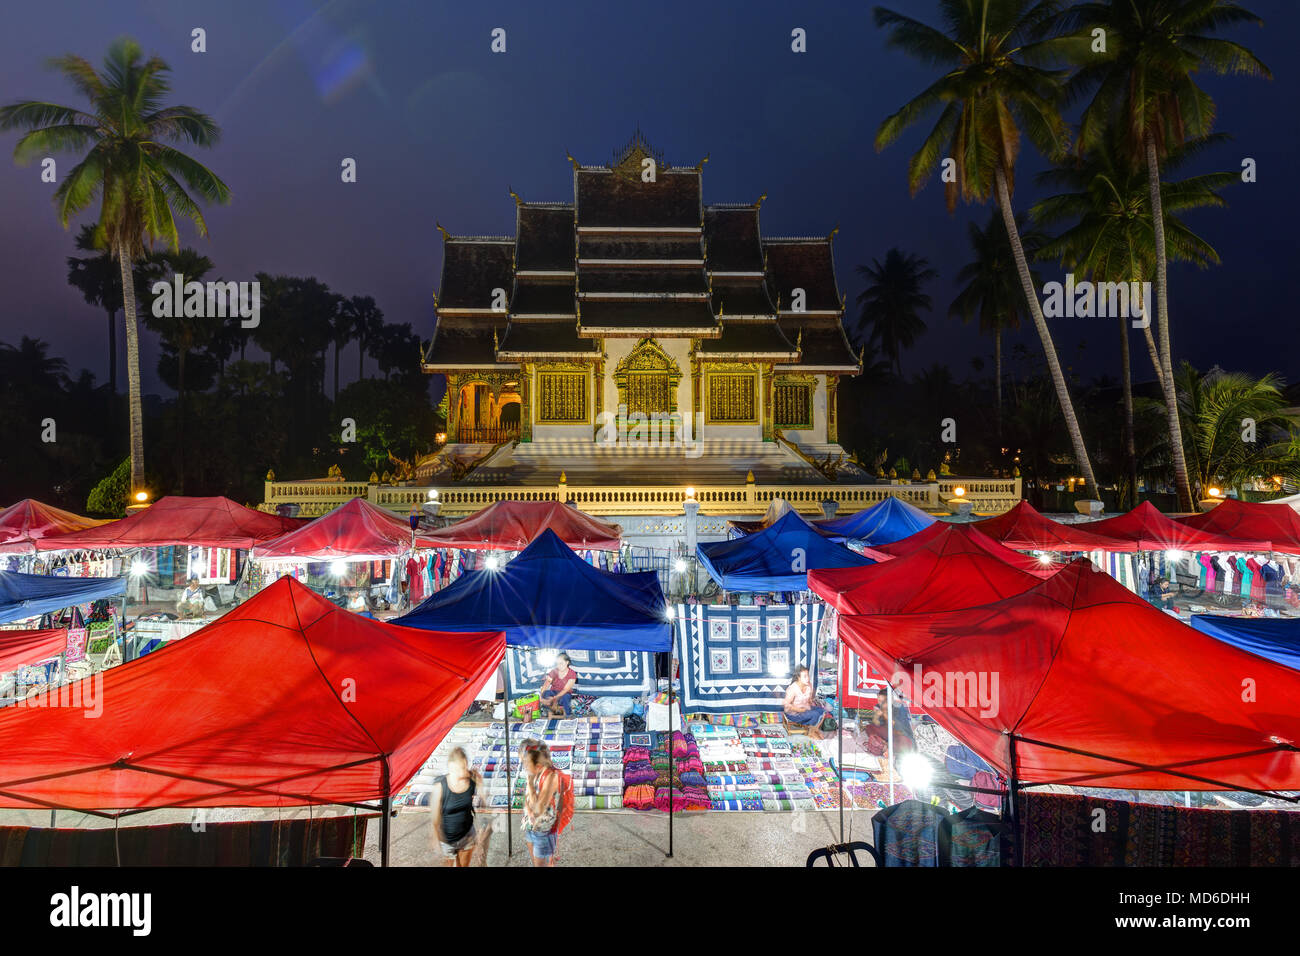 Night market and lit Haw Pha Bang temple, also known as Royal or Palace Chapel, next to the Royal Palace in Luang Prabang, Laos, at dusk. Stock Photo